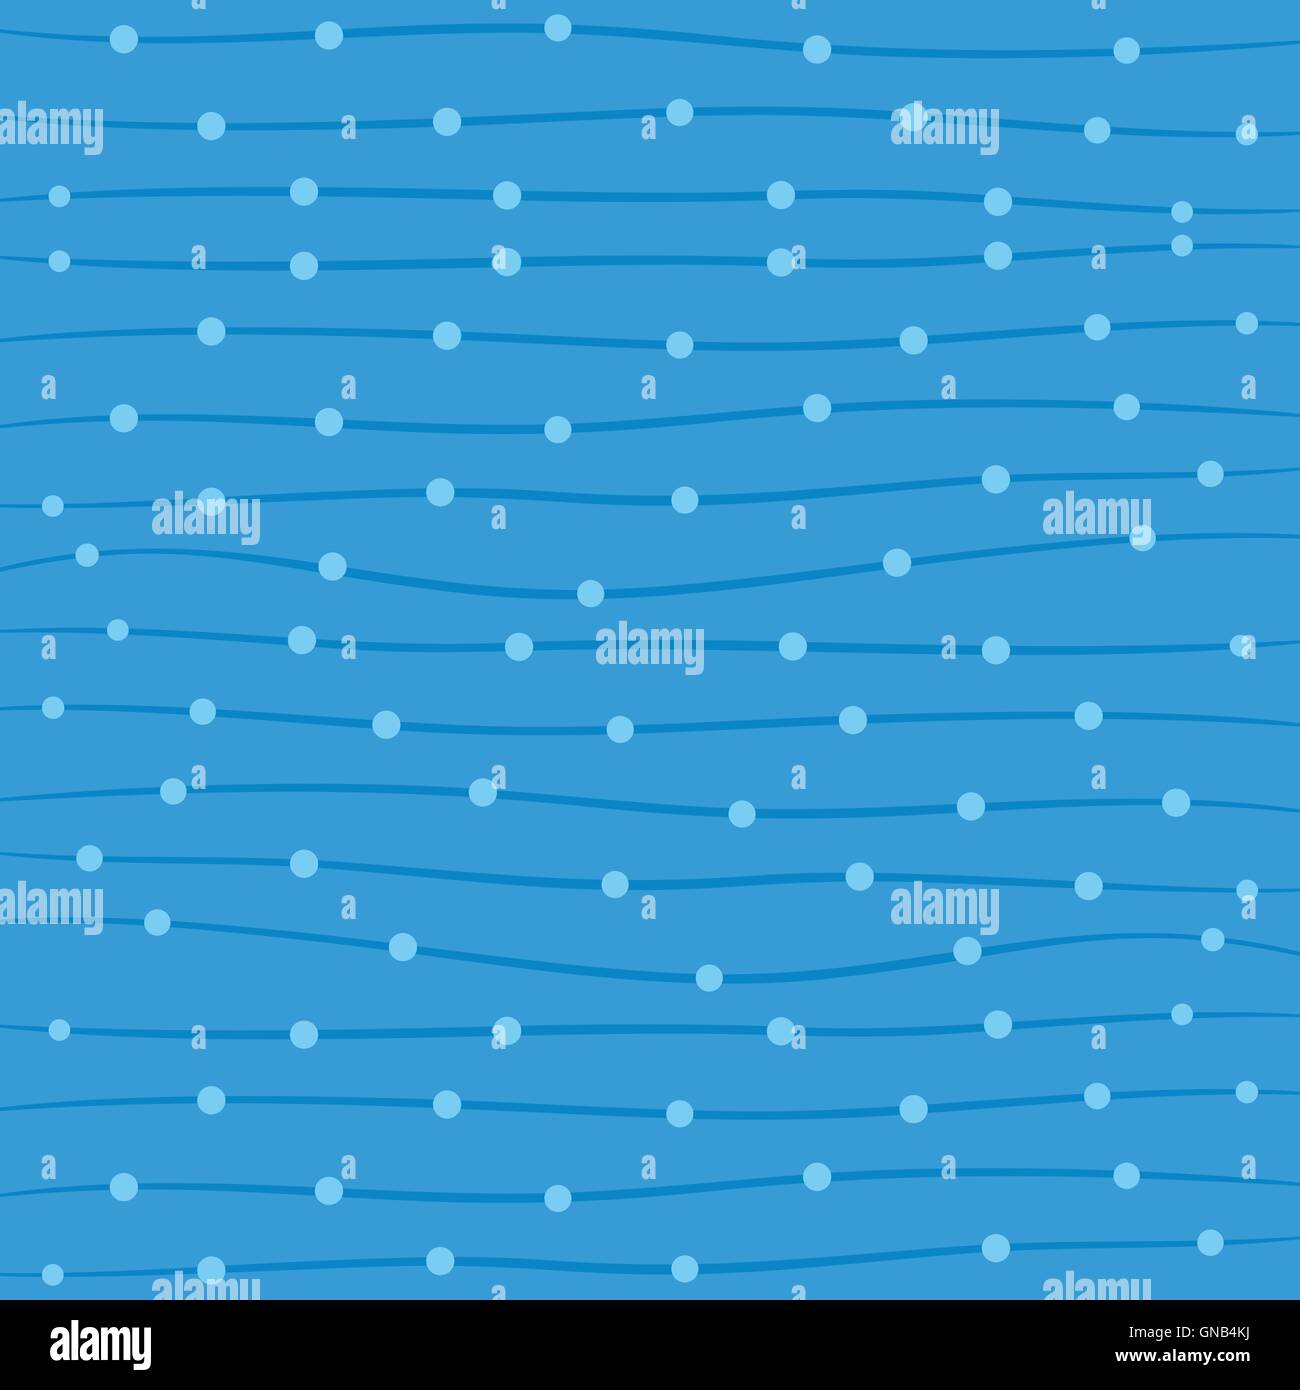 Bande d'onde créative et motif de points en fond bleu vector Illustration de Vecteur